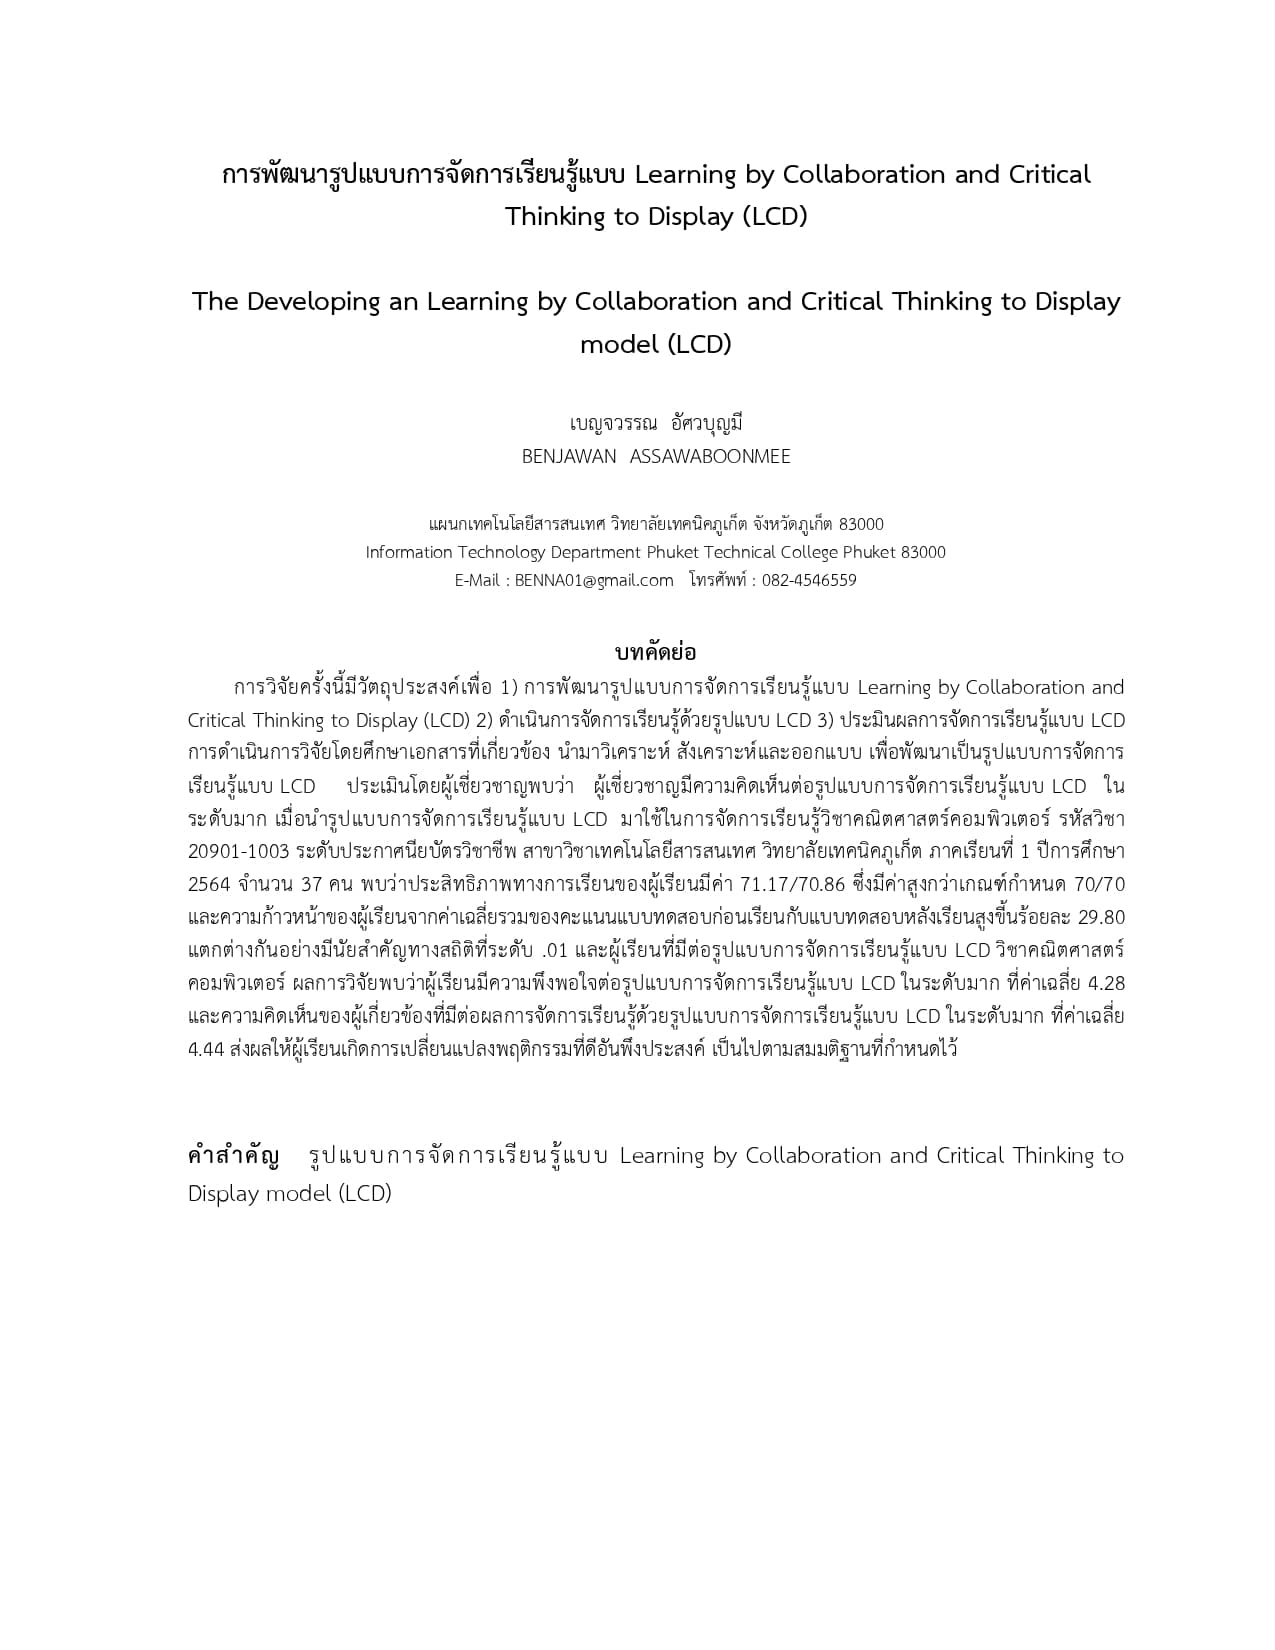 บทความเรื่องการพัฒนารูปแบบการจัดการเรียนรู้แบบLearning by Collaboration and Critical Thinking to Display (LCD)